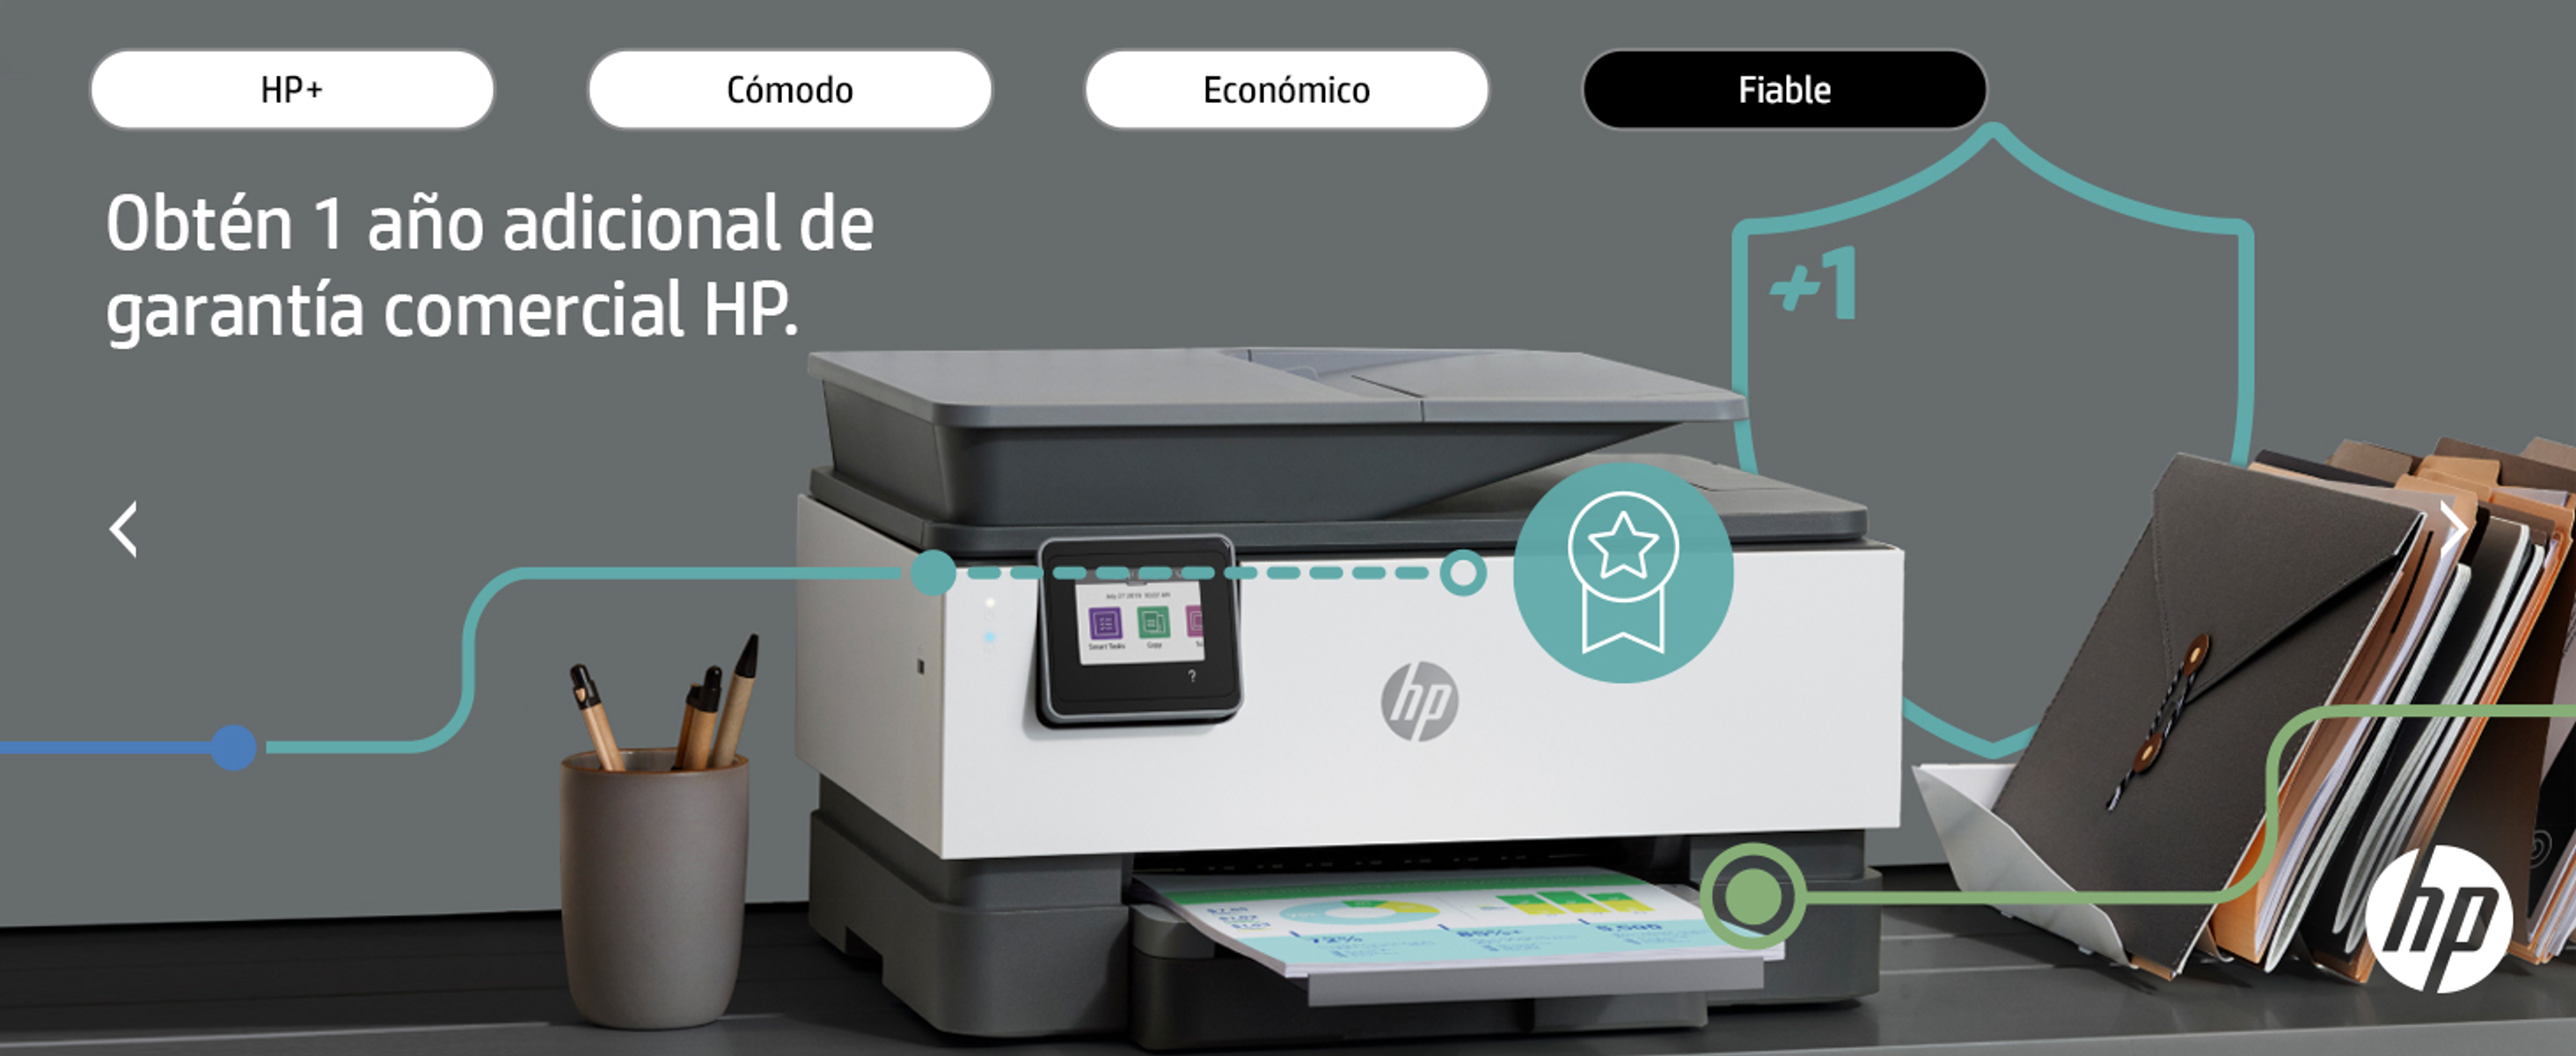 HP OFFICEJET WLAN PRO Thermal Multifunktionsdrucker Inkjet PRNTR:EU-XMO2 Netzwerkfähig 9012E AIO